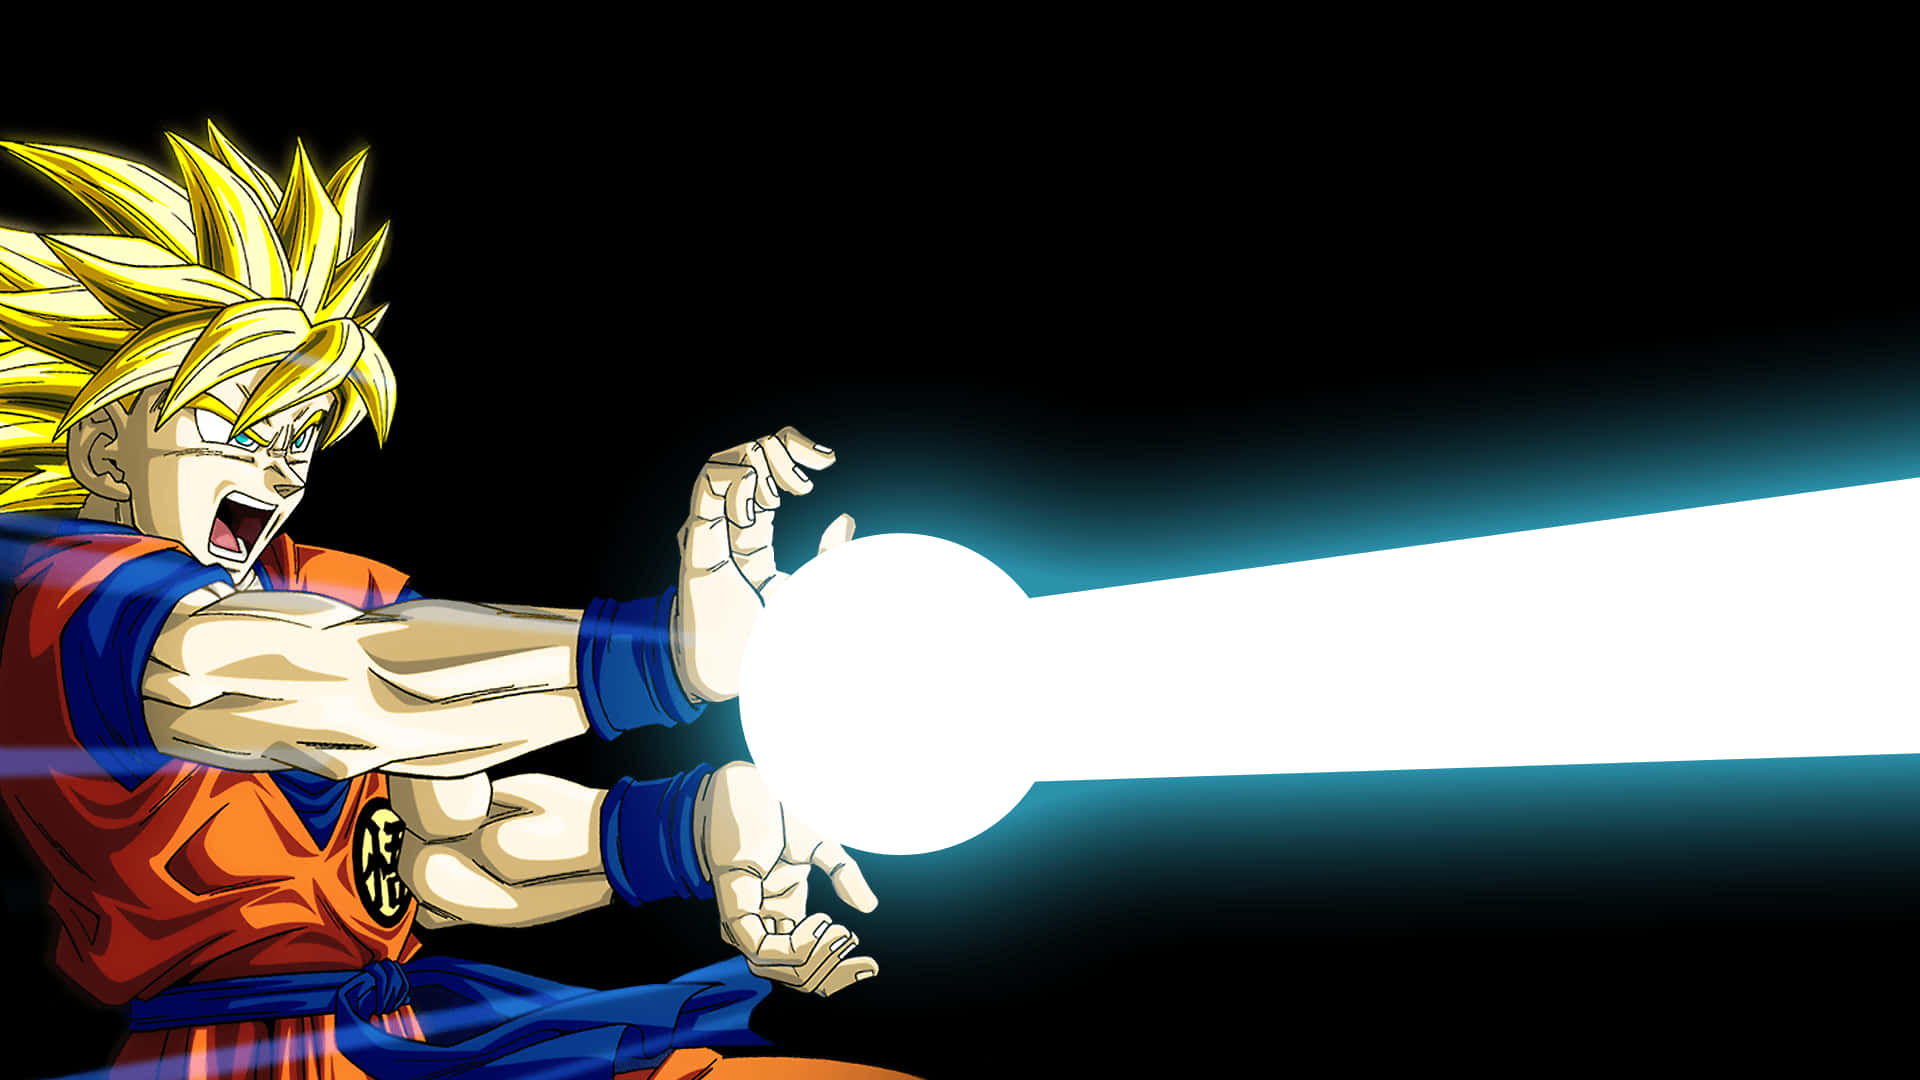 Imagemde Fanart Do Goku Para Papel De Parede De Computador Ou Celular.